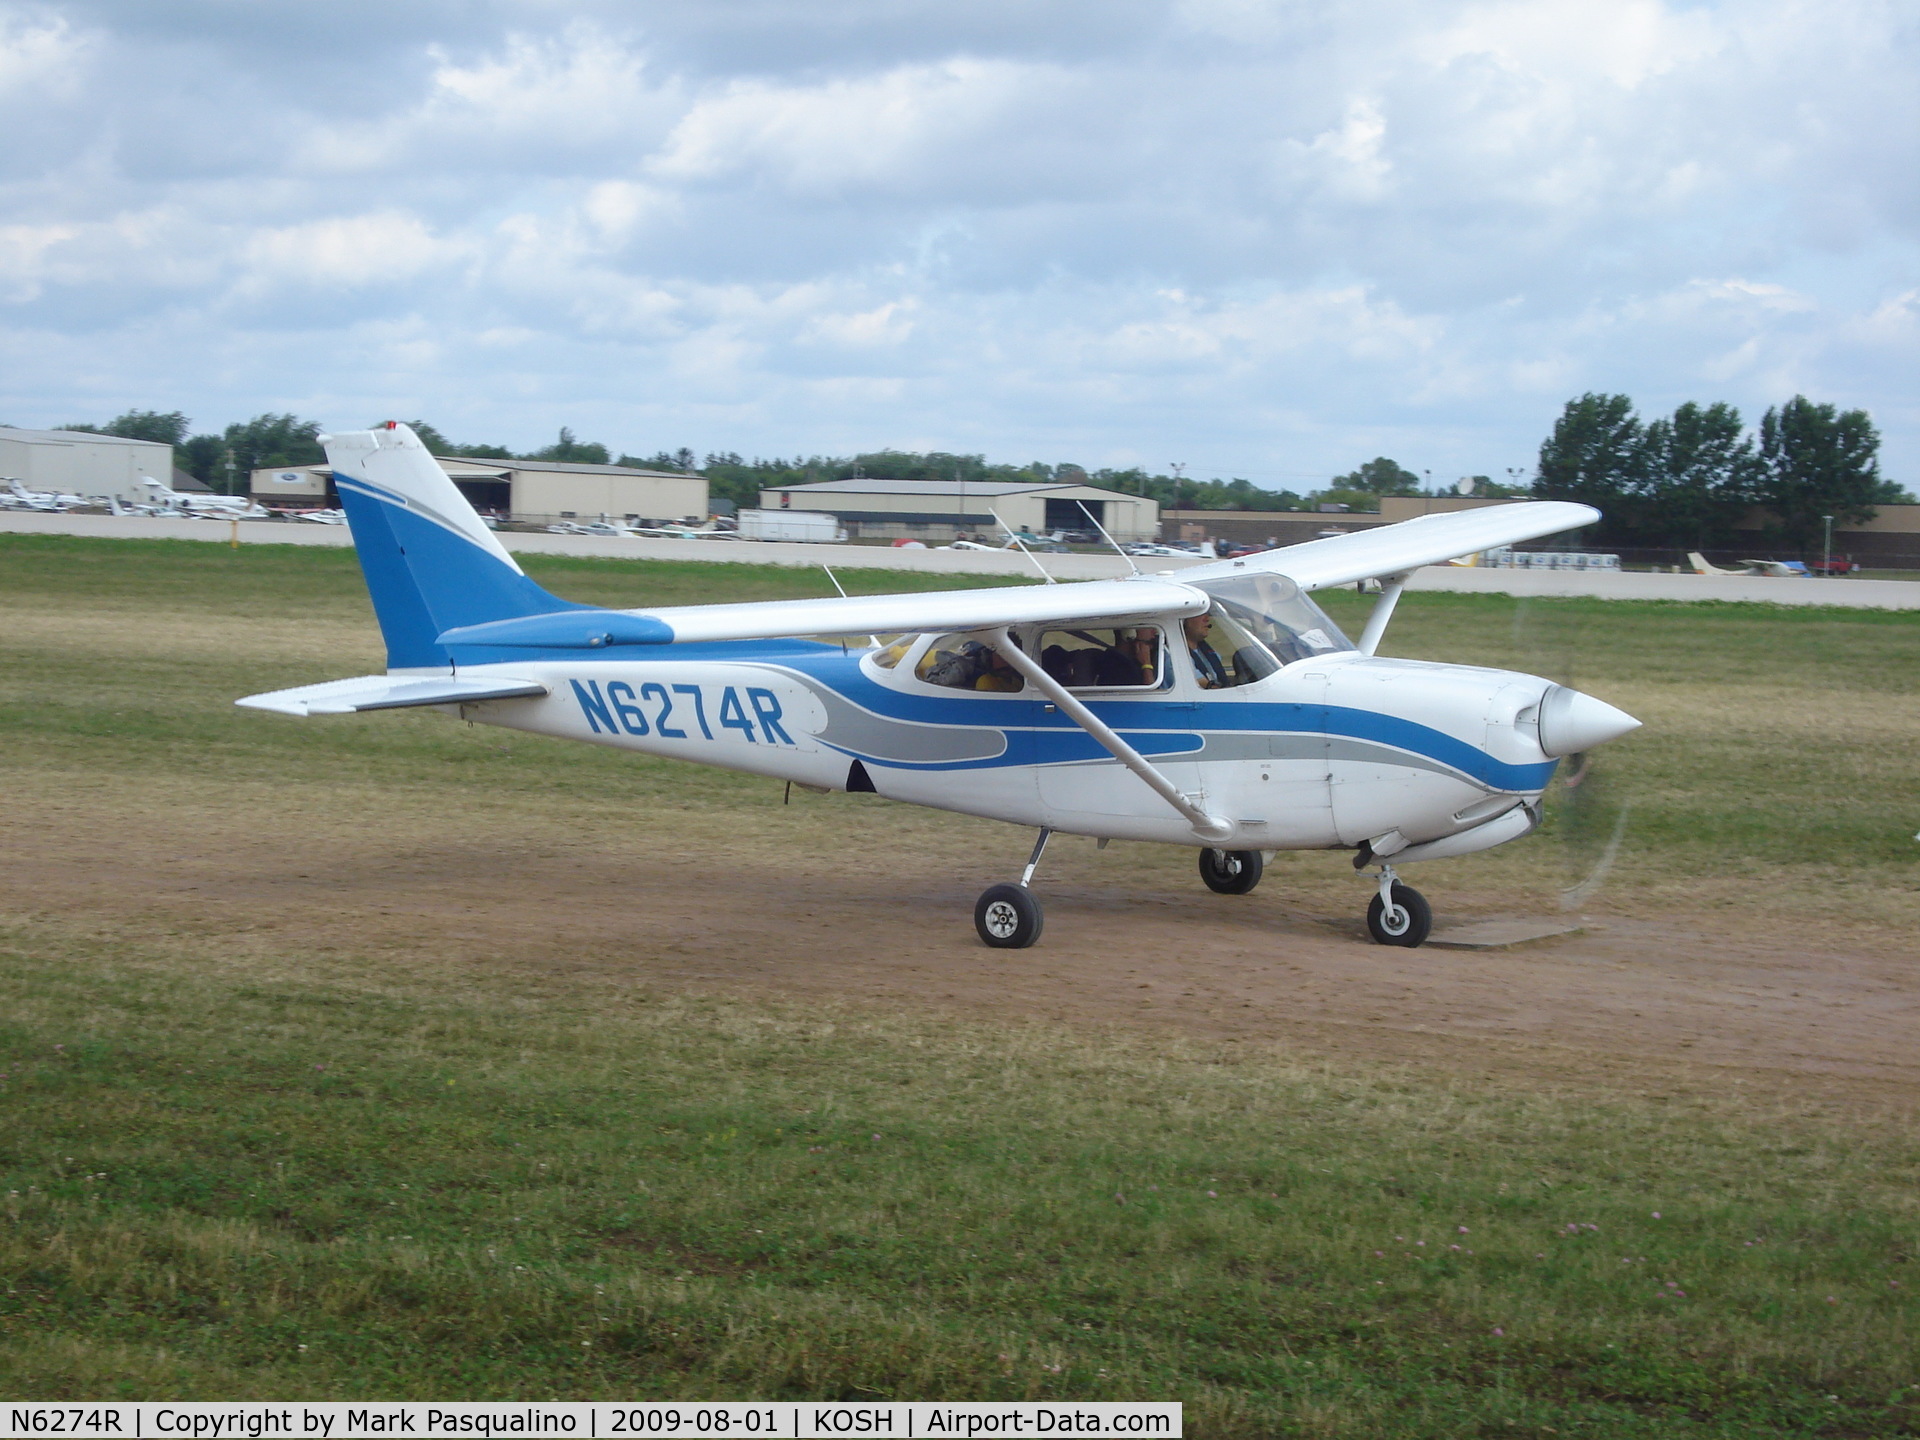 N6274R, 1979 Cessna 172RG Cutlass RG C/N 172RG0136, Cessna 172RG